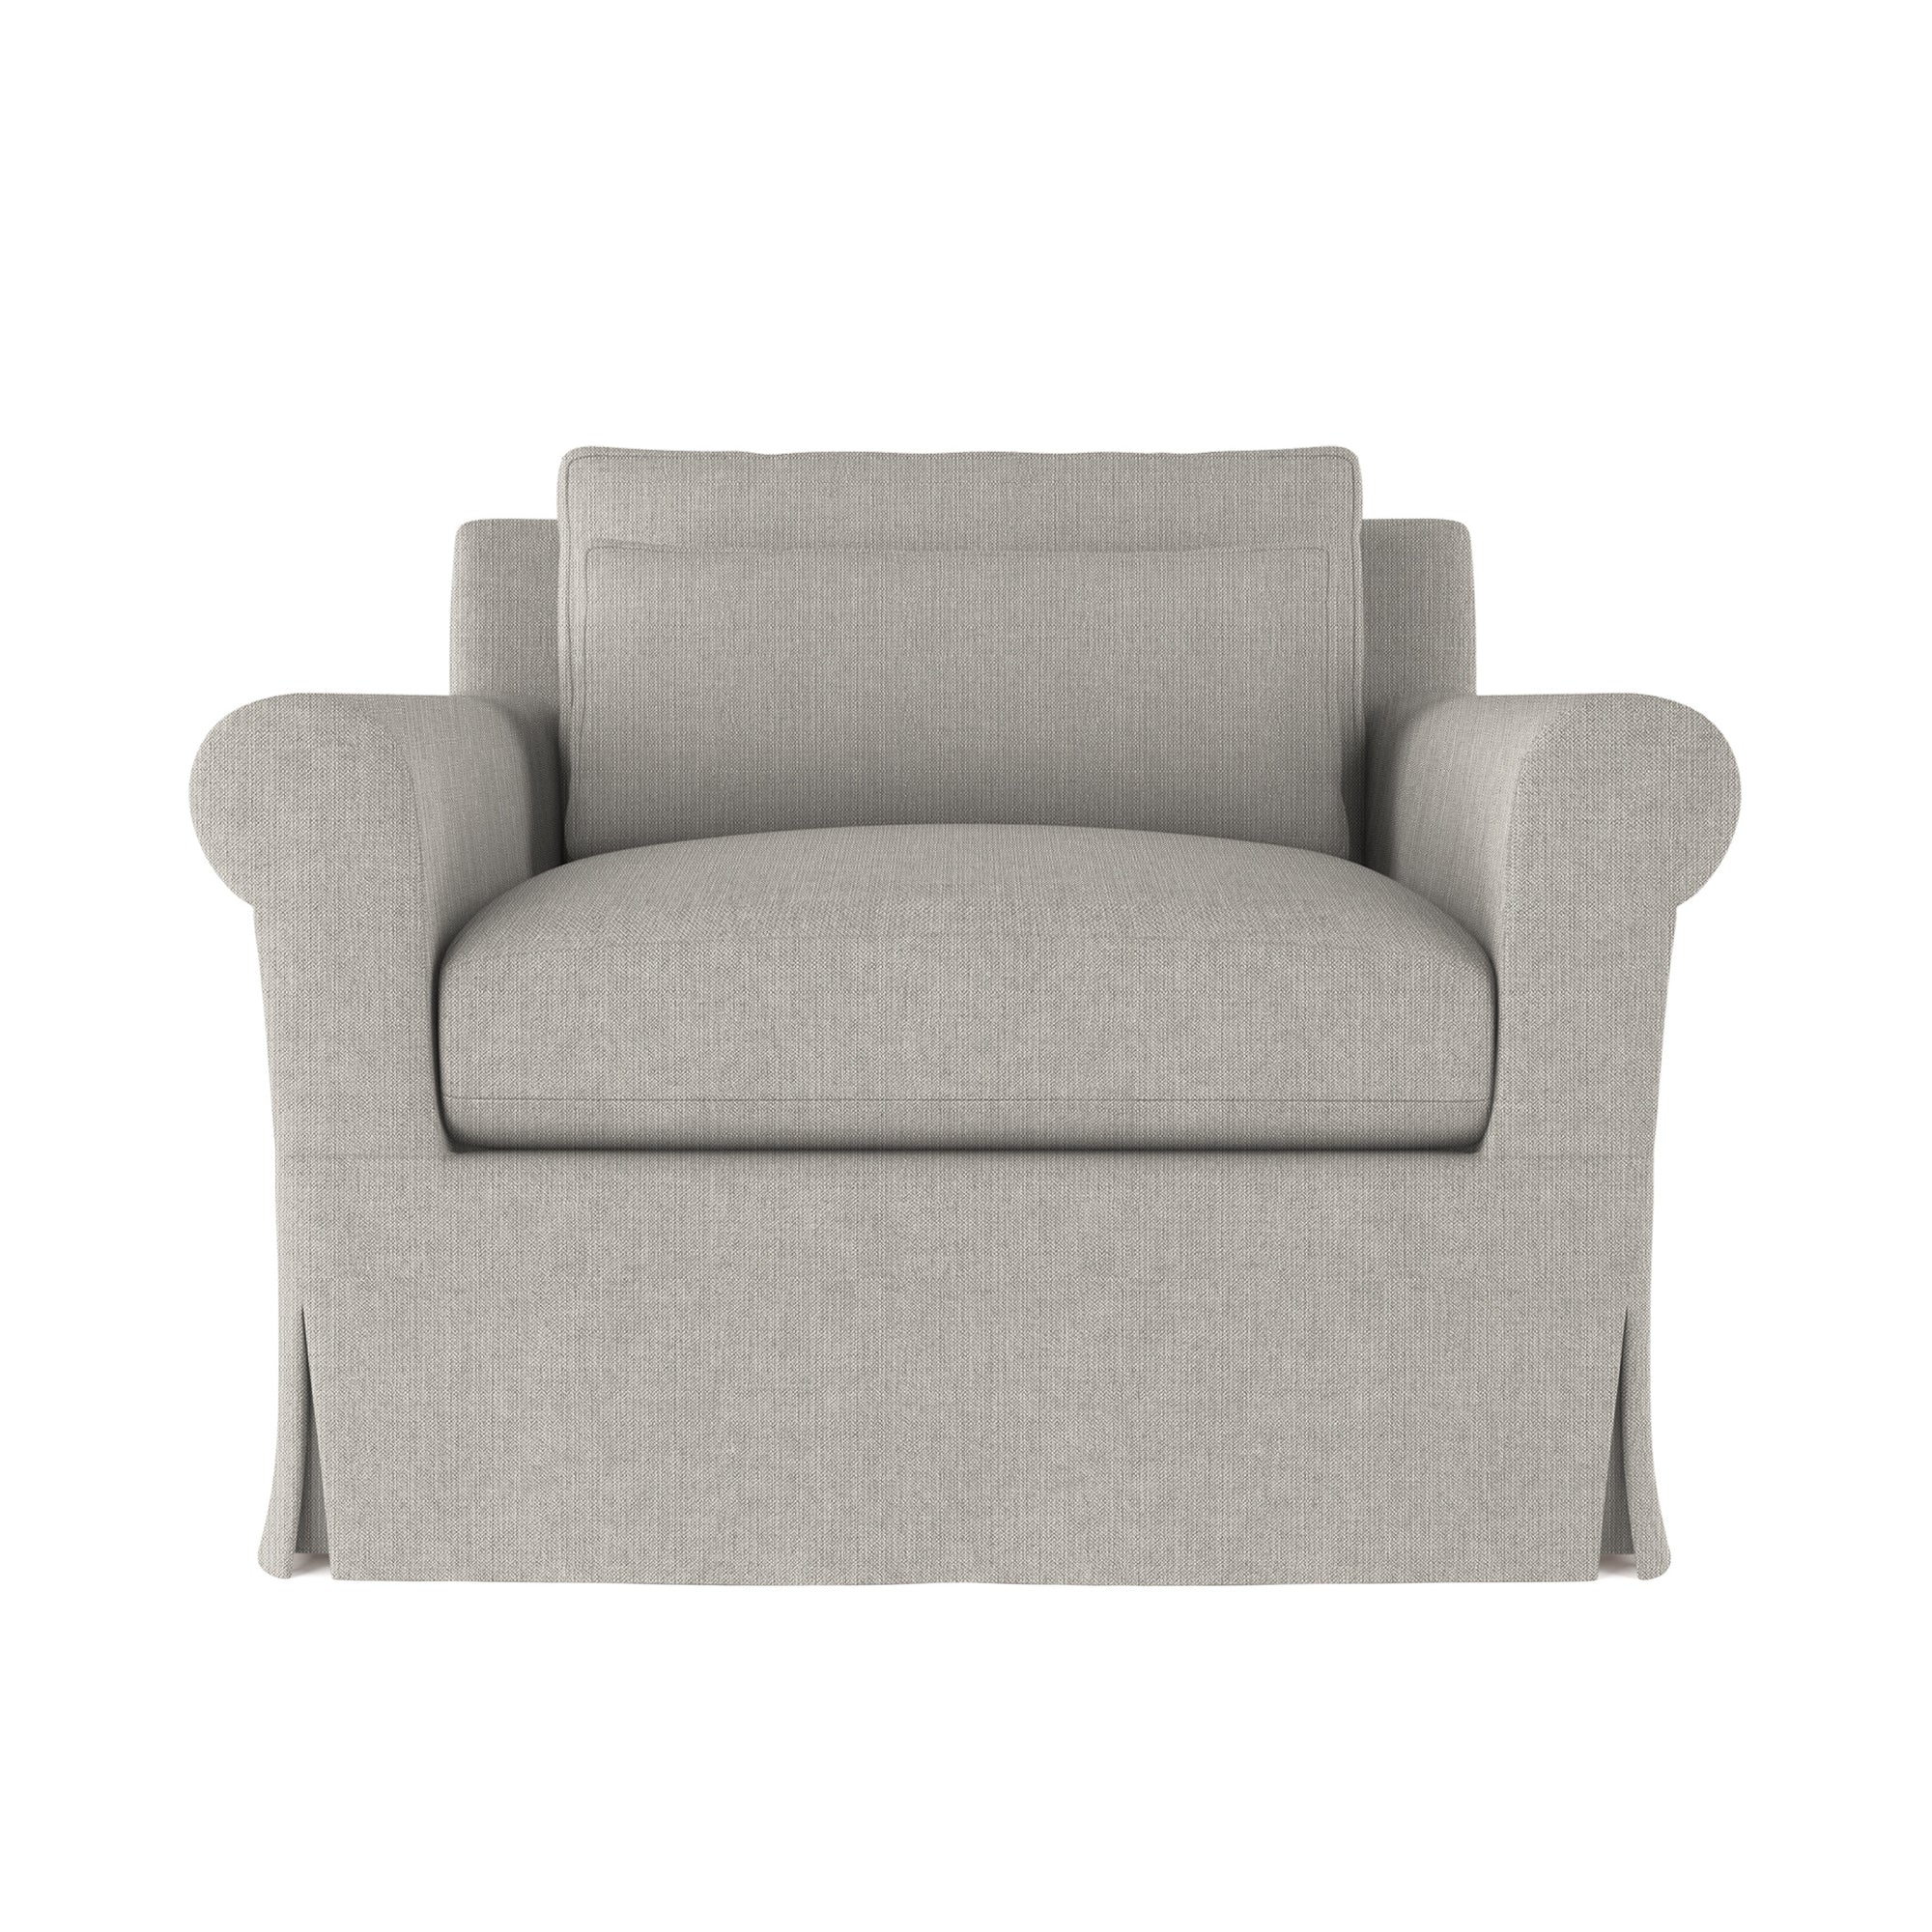 Ludlow Chair - Silver Streak Box Weave Linen